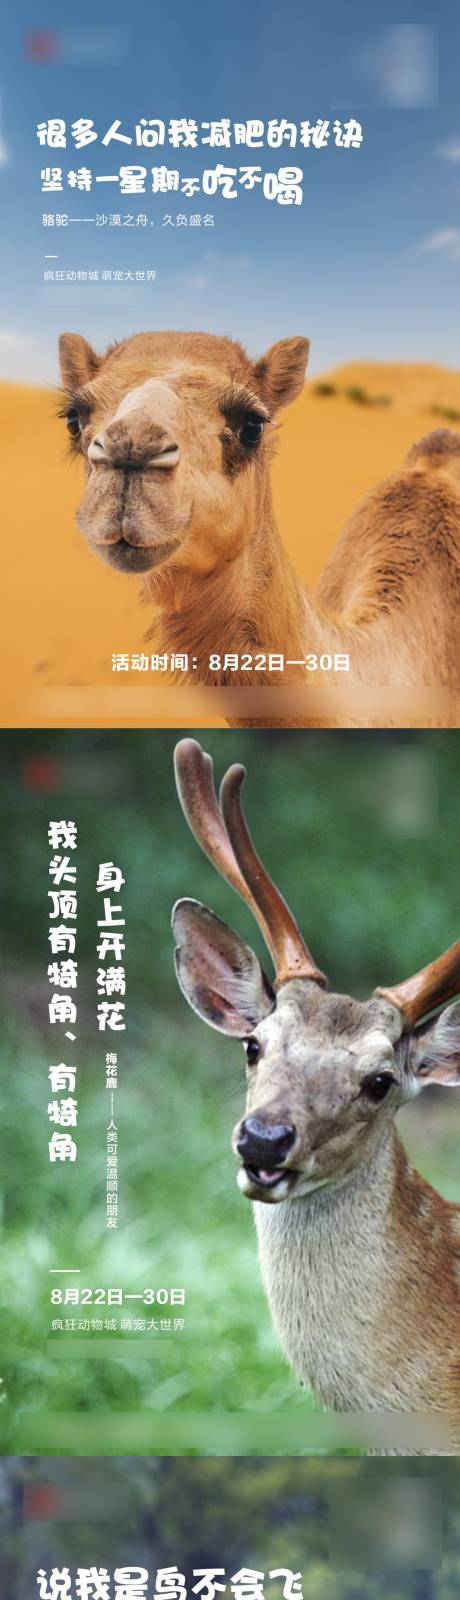 动物单图刷屏海报